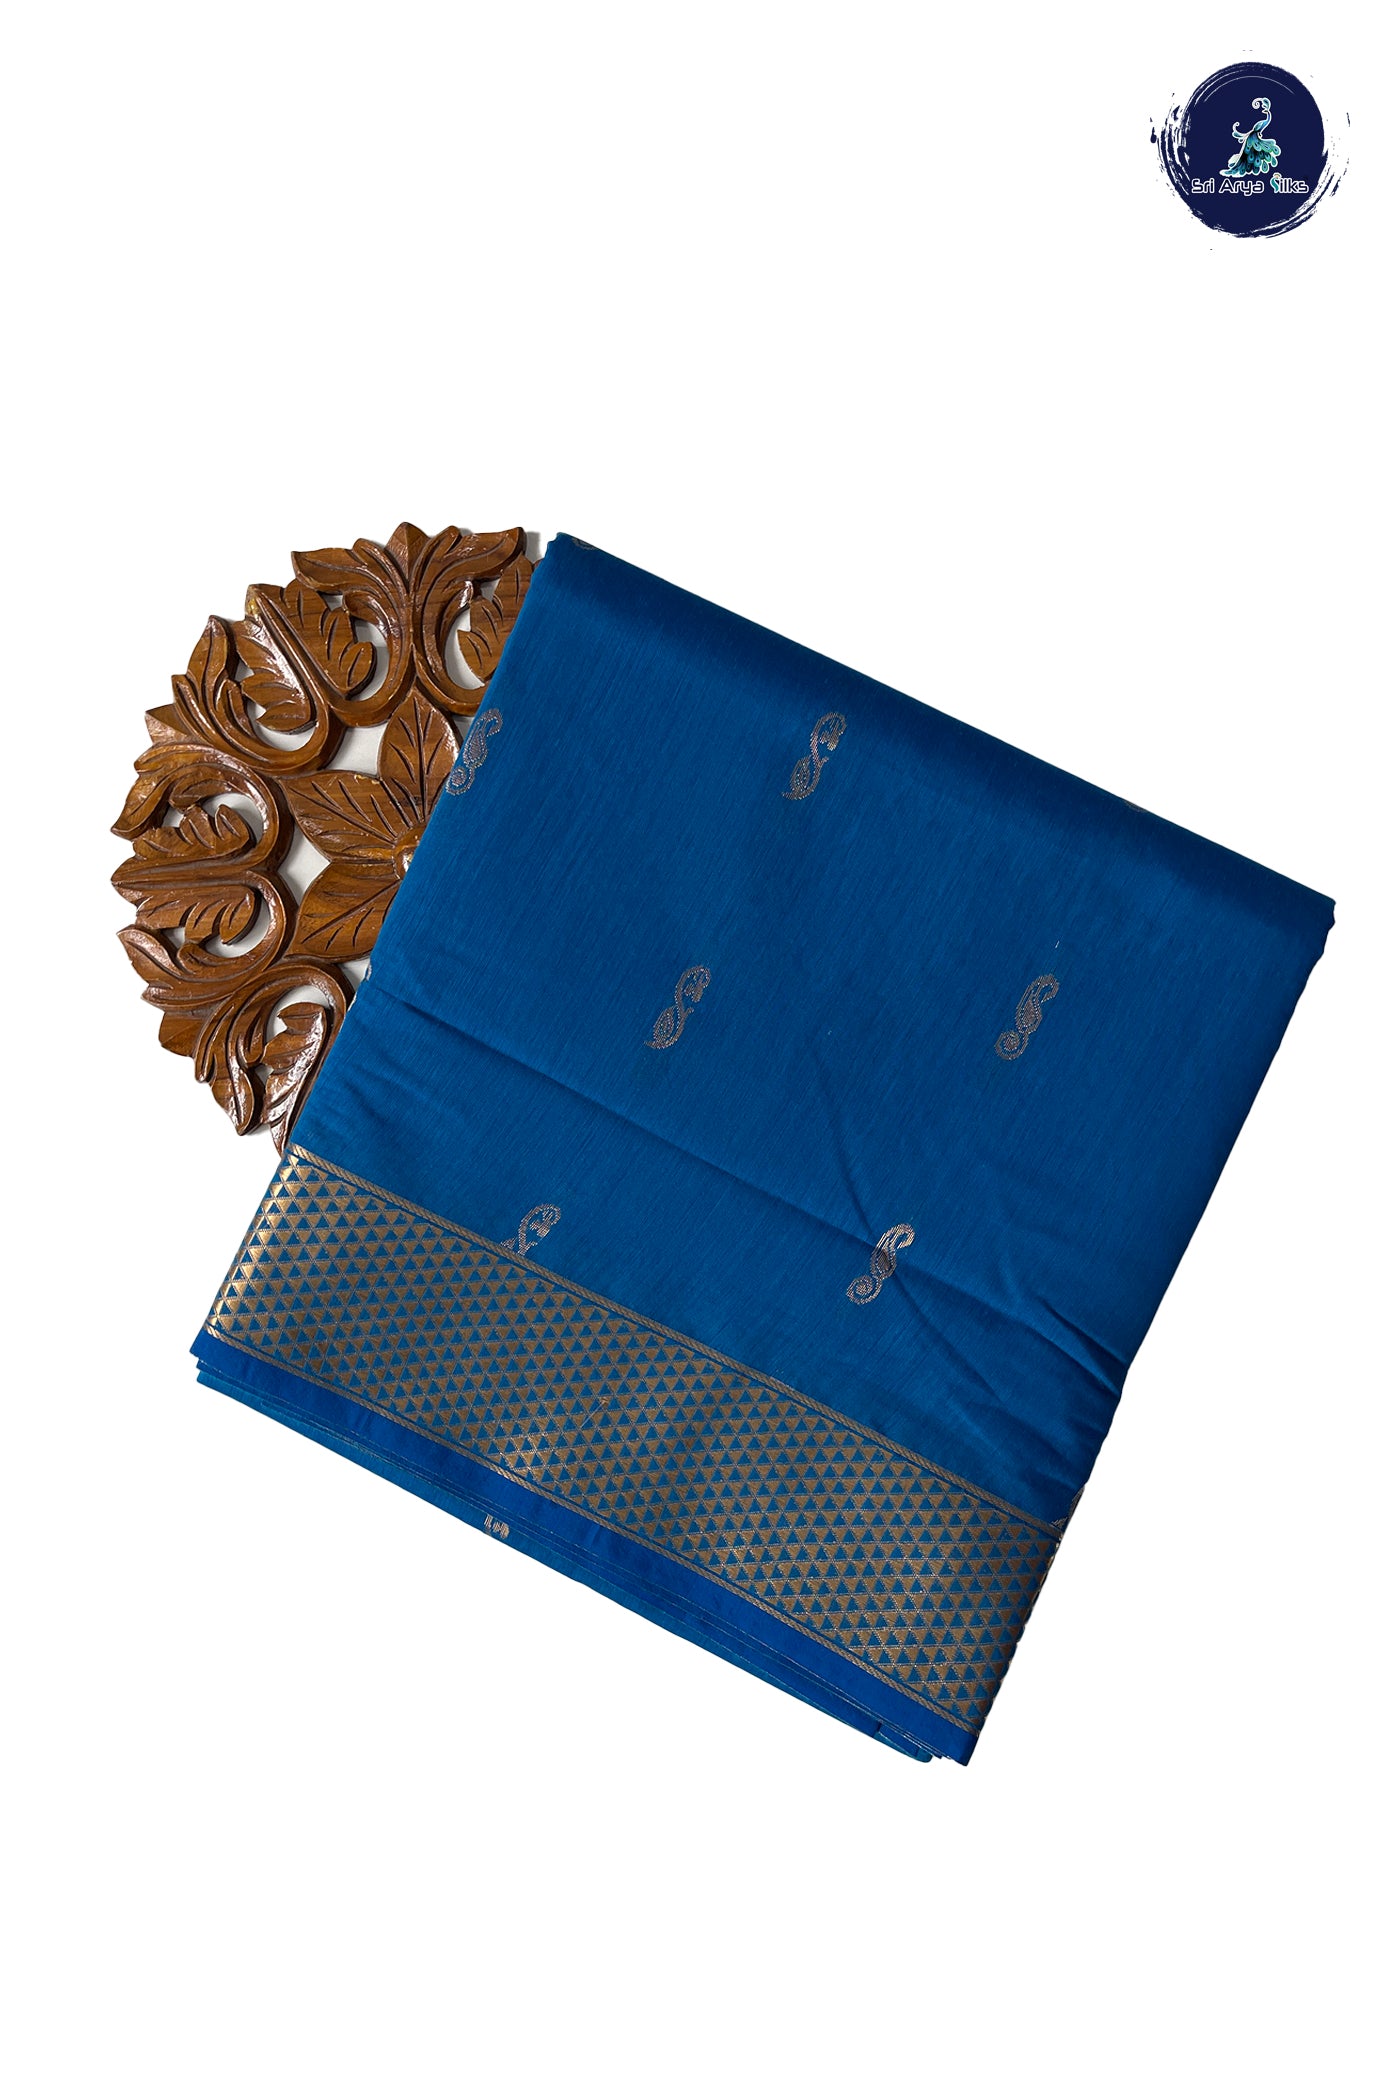 Copper Sulphate Blue Madisar Semi Silk Cotton Saree With Zari Buttas Pattern